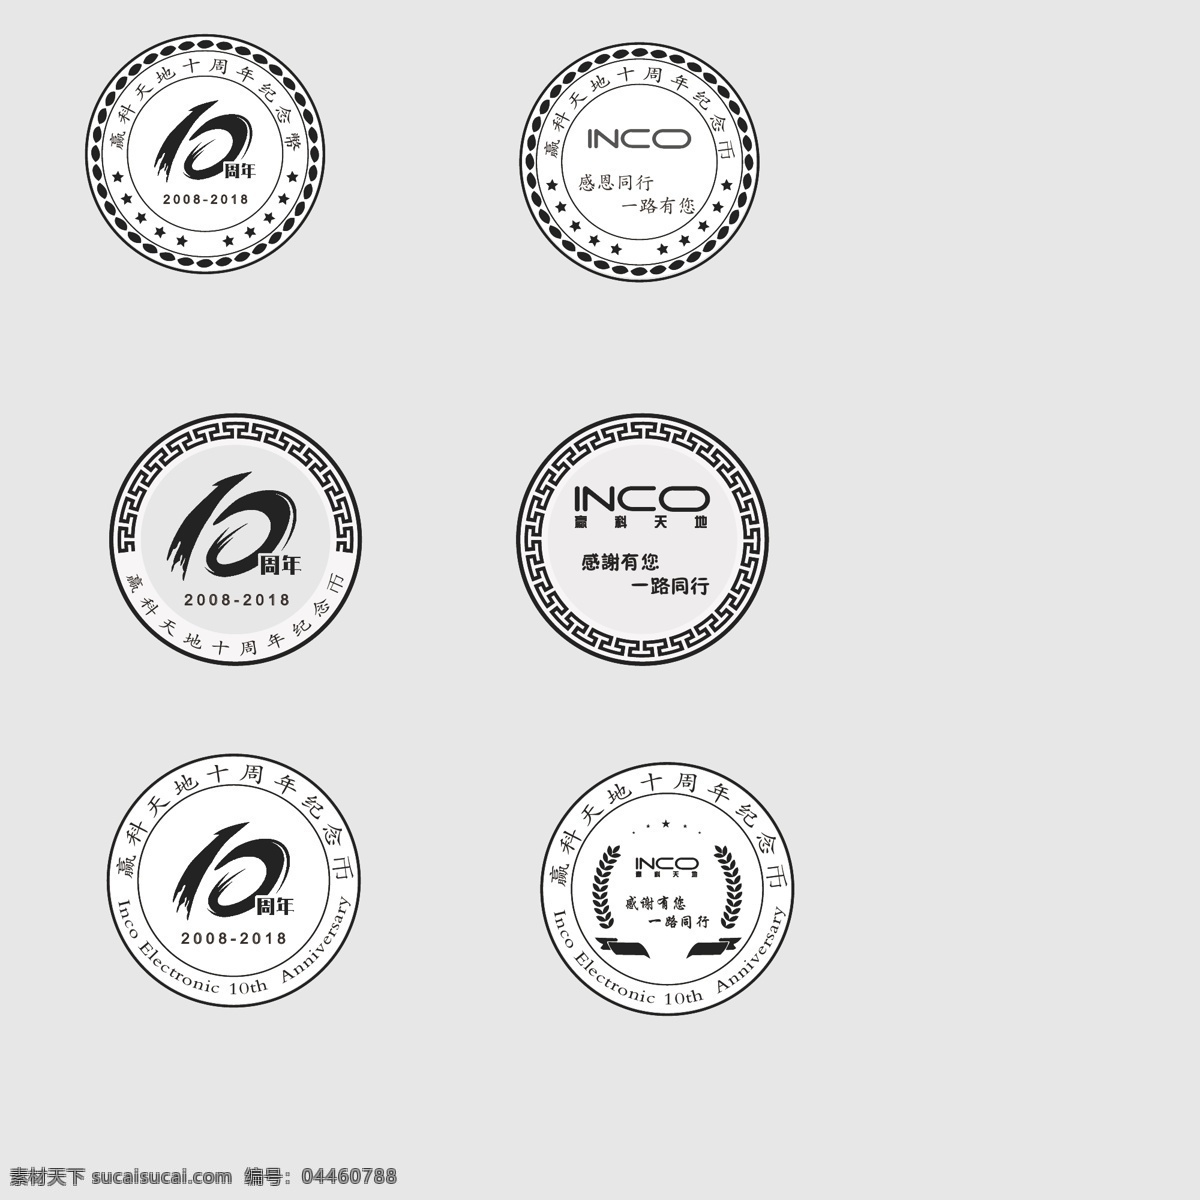 纪念币 年庆币 纪念年币 年 logo 年币 银币设计图案 纪念品 标志图标 其他图标